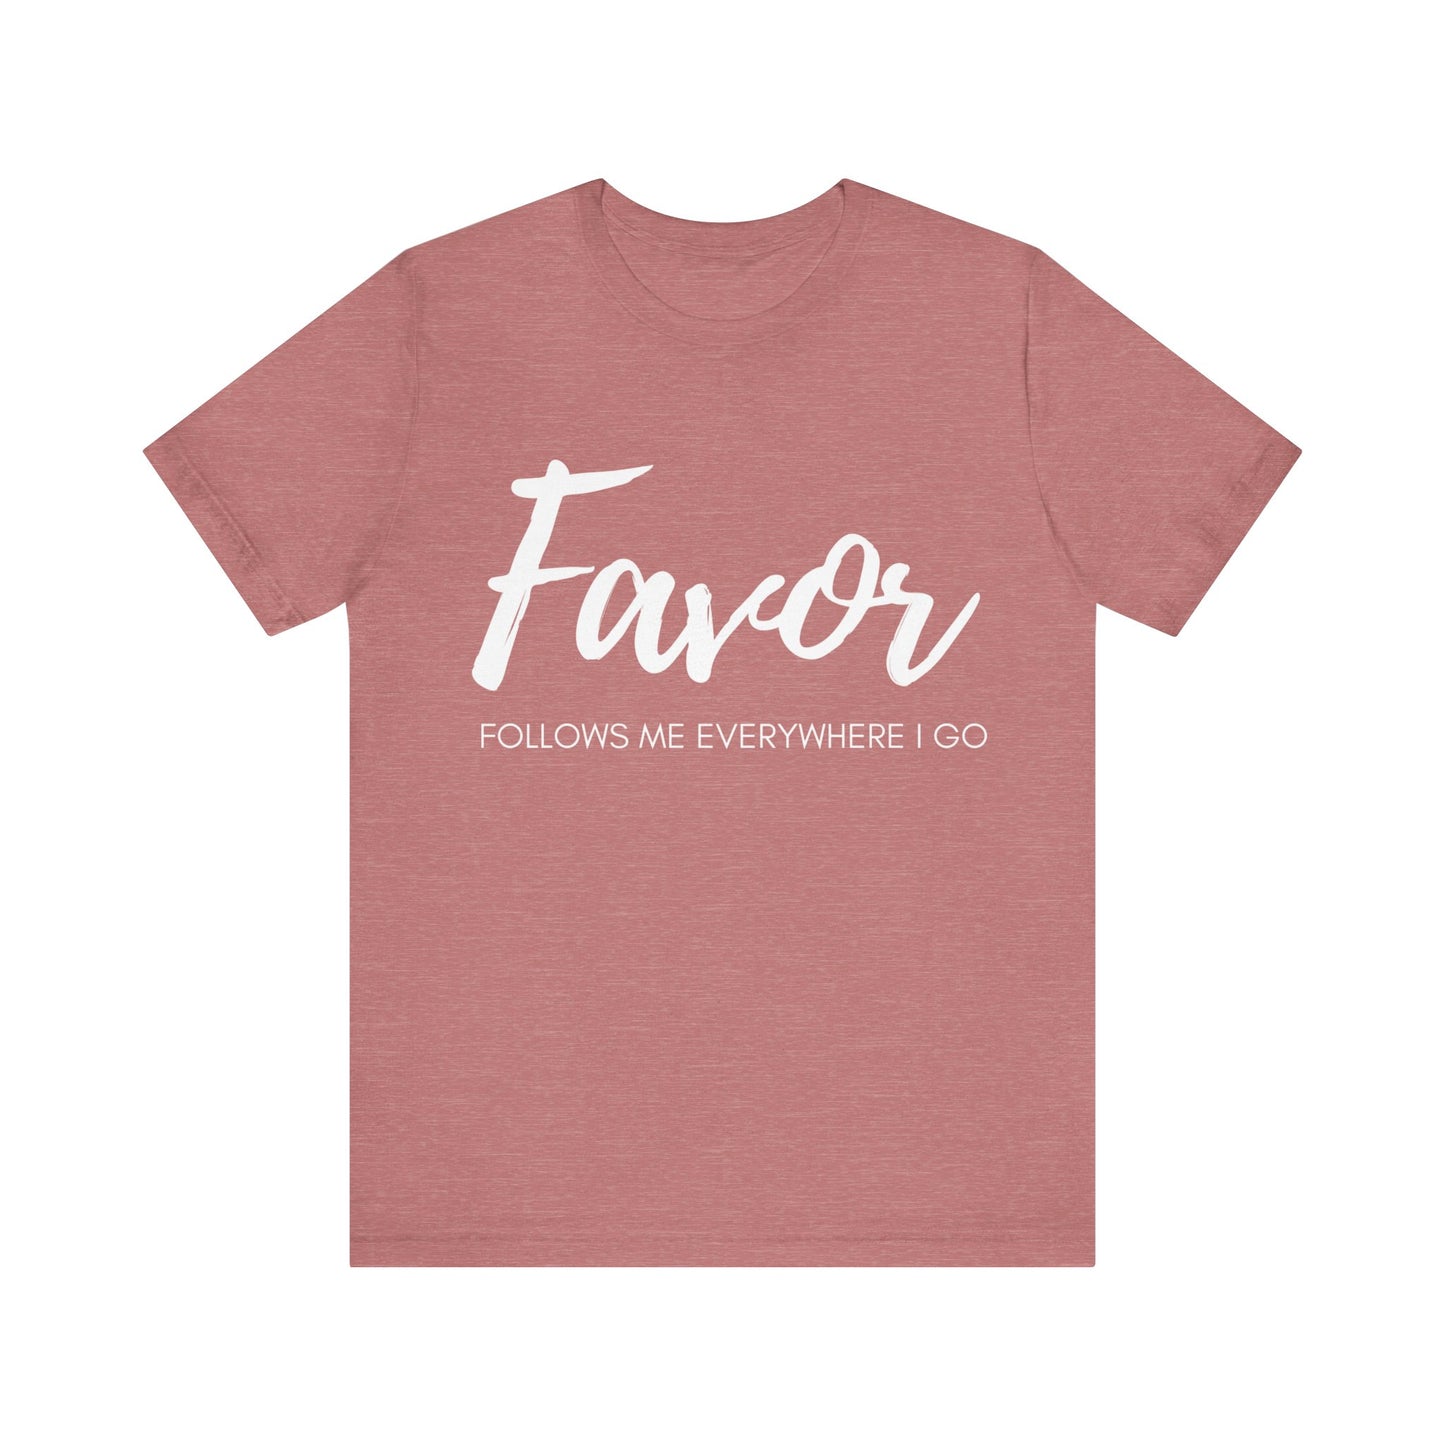 Favor T-Shirt